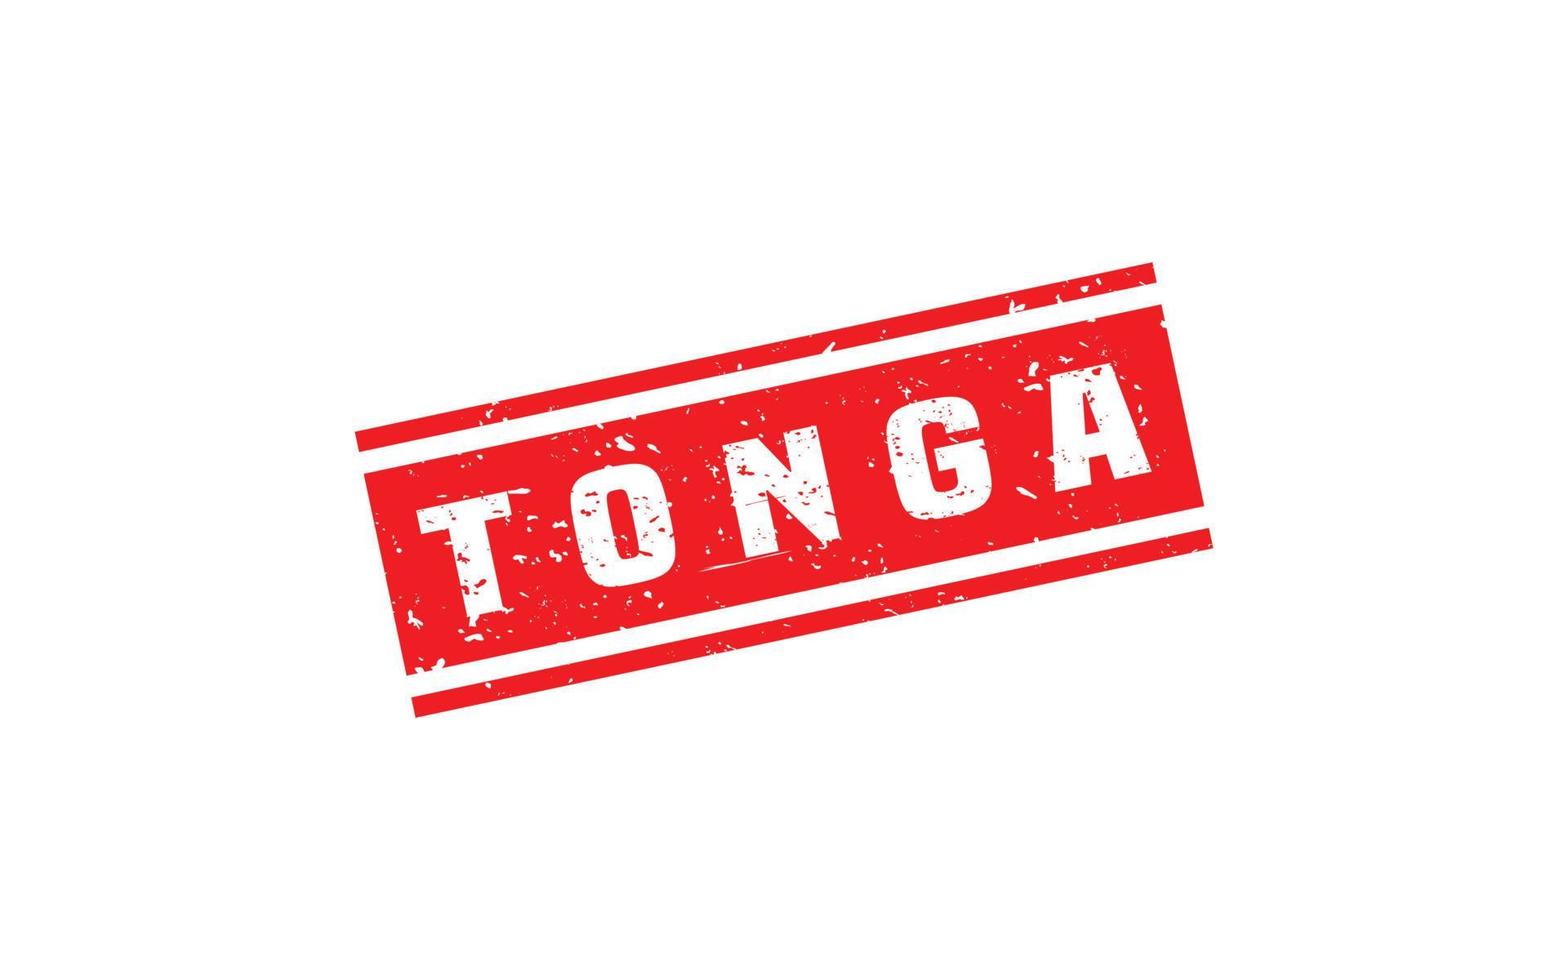 Tonga timbre caoutchouc avec grunge style sur blanc Contexte vecteur